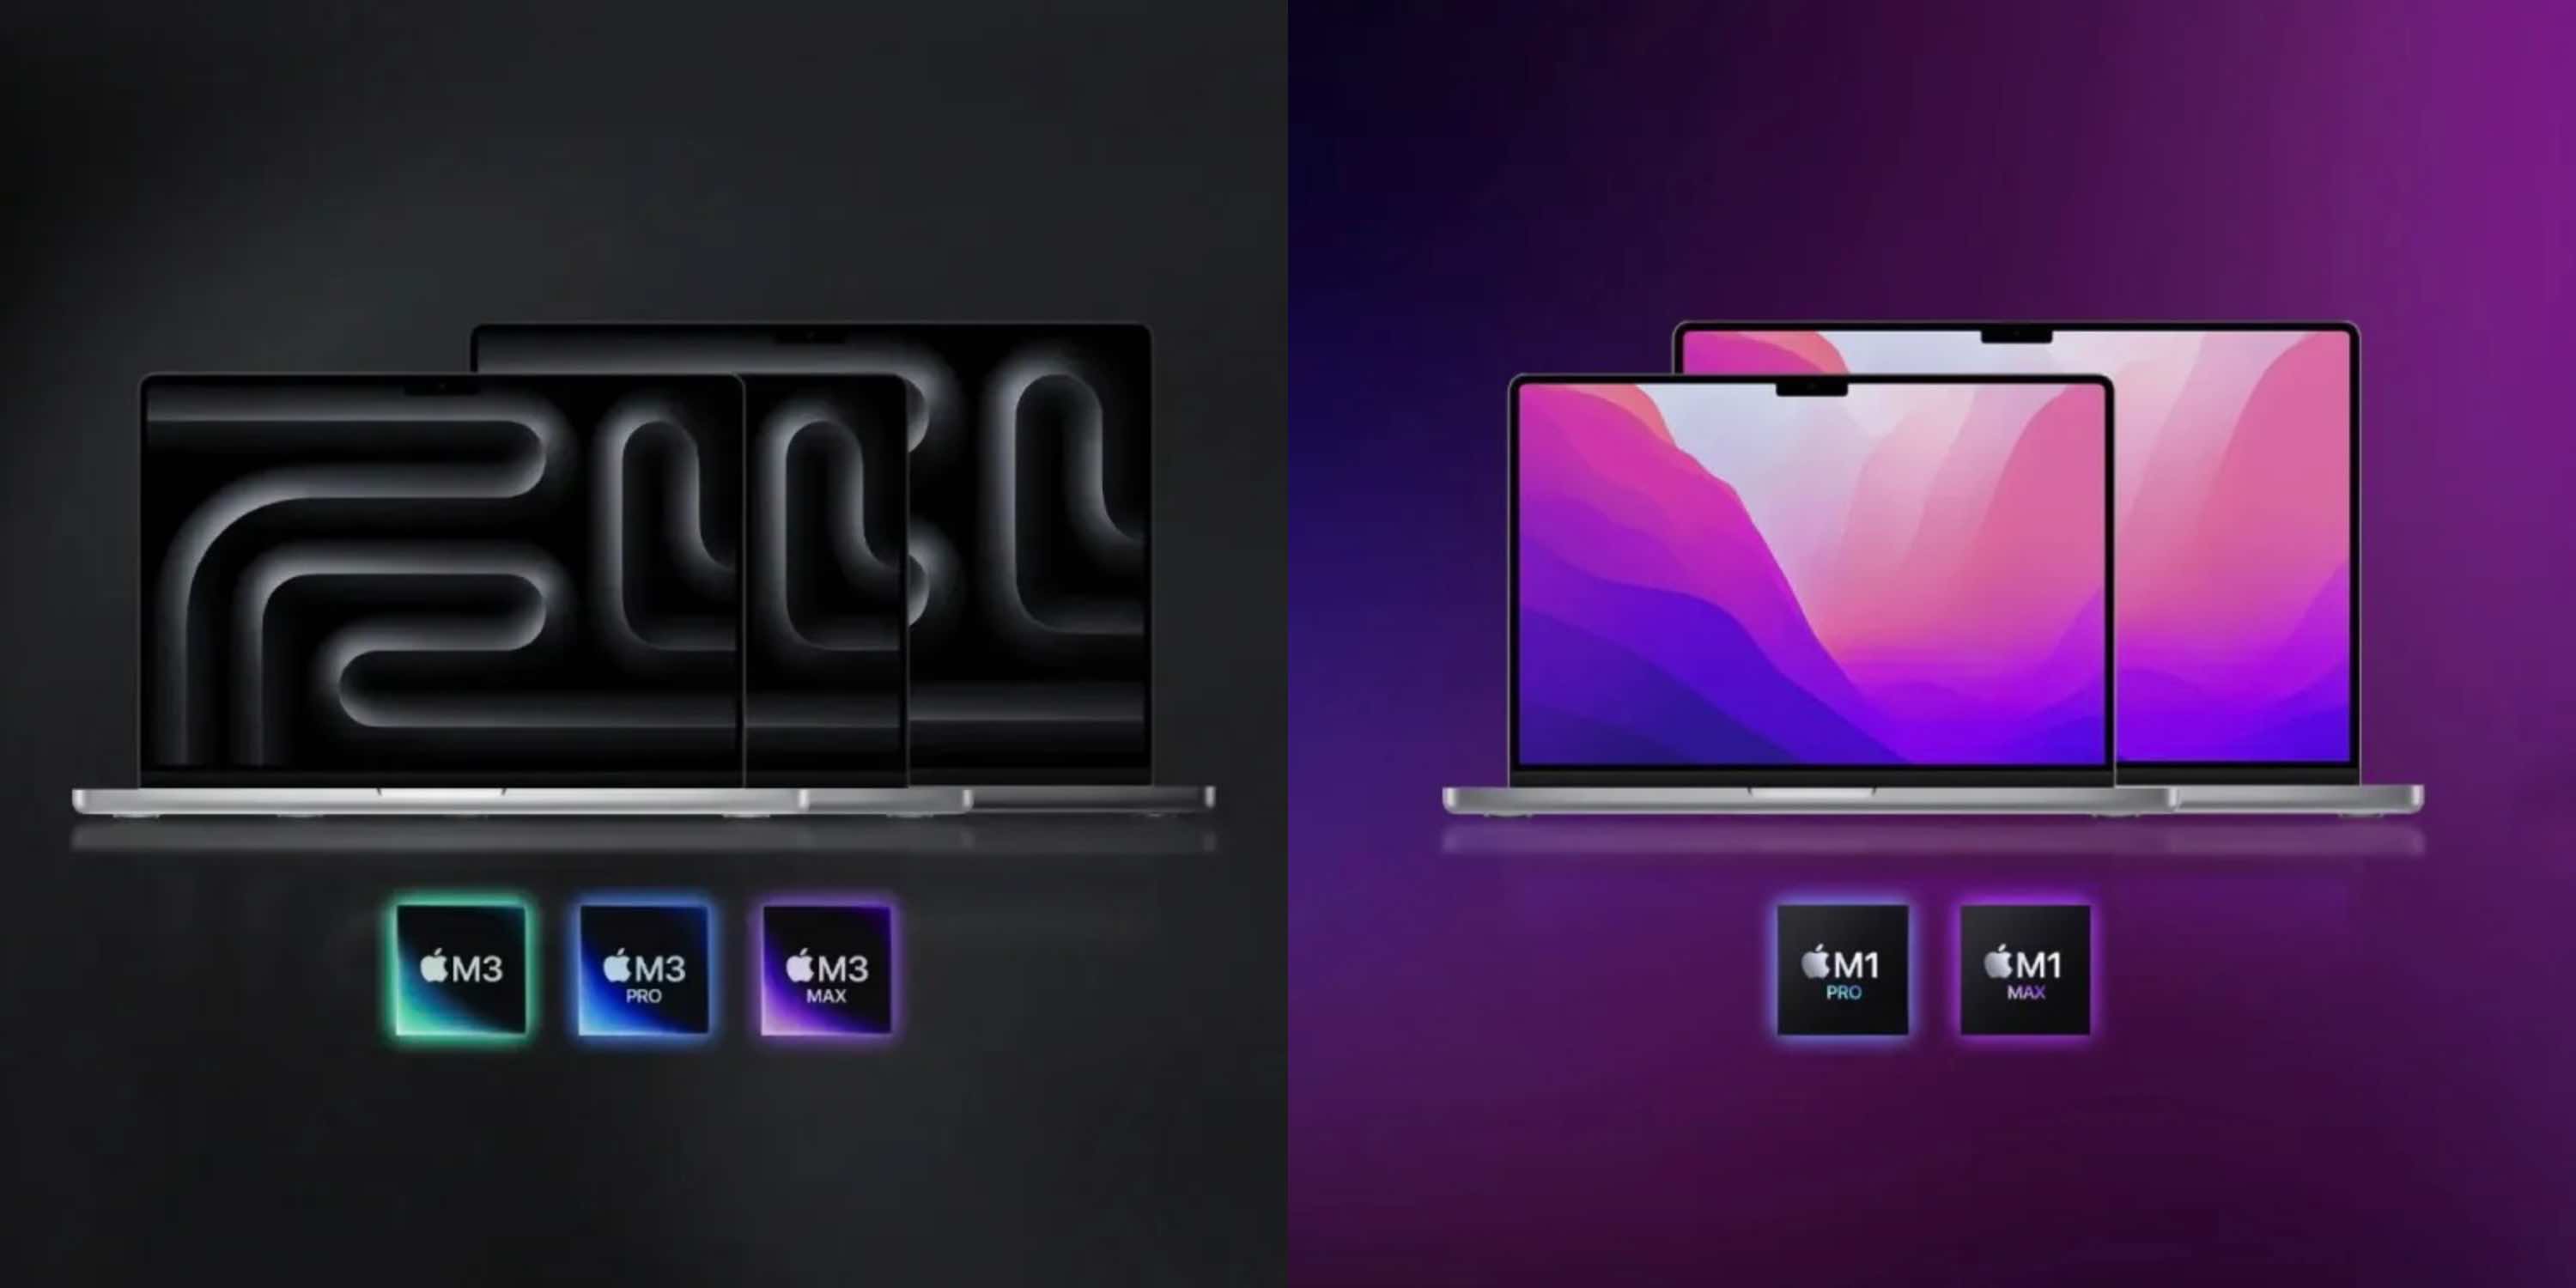 Mac processor comparison: M1, M2, M3 vs Intel